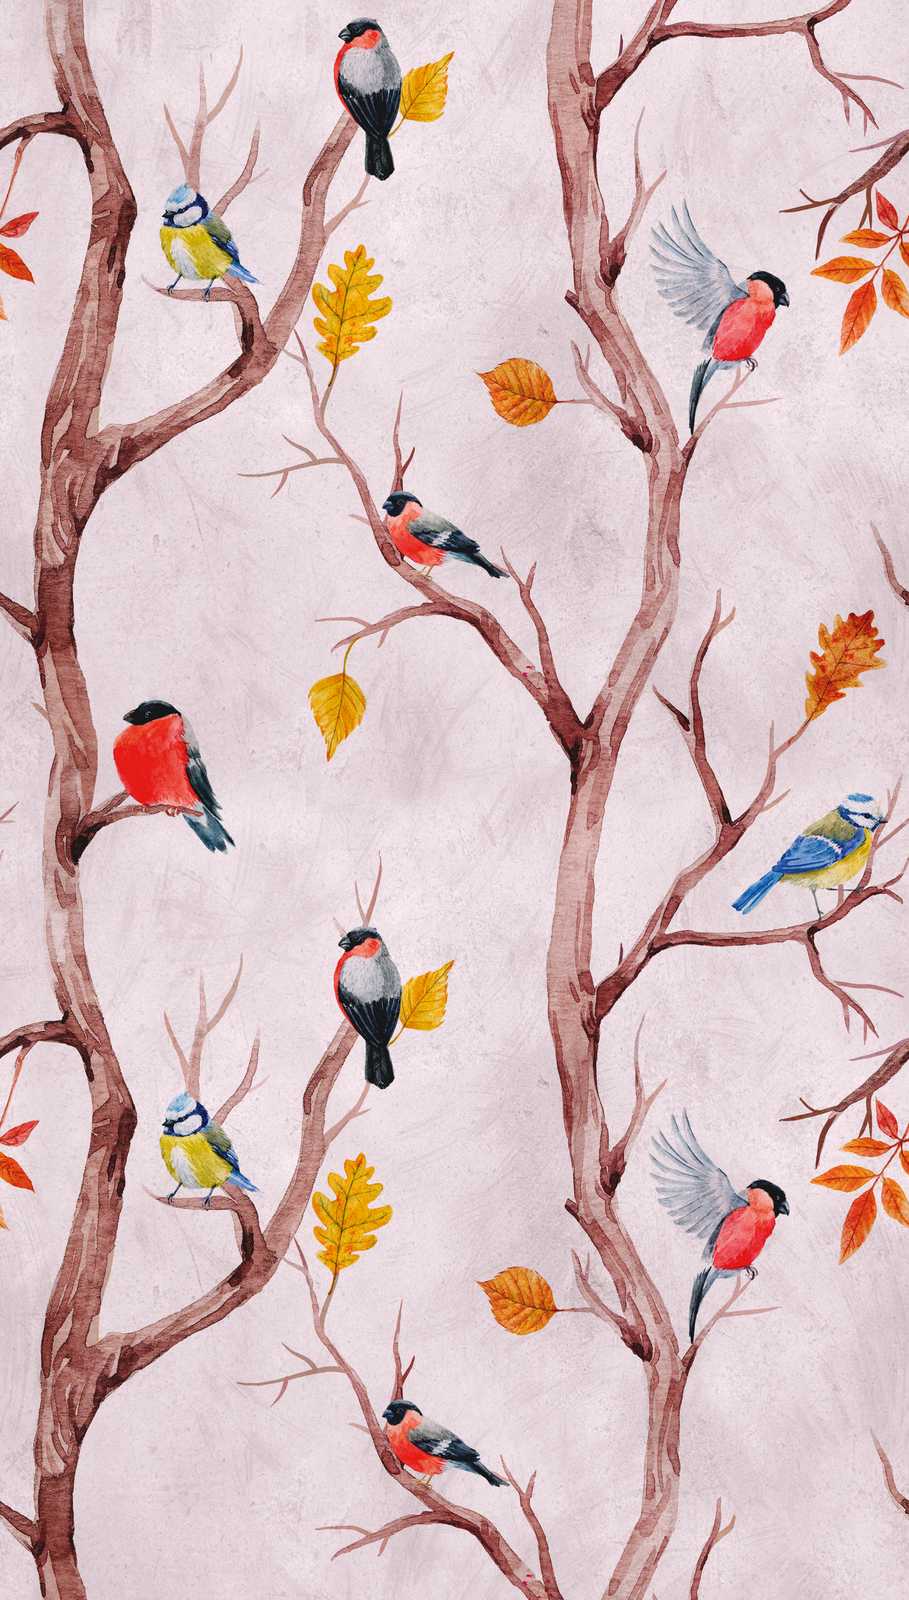             Nouveauté papier peint - papier peint à motifs d'oiseaux dans le style aquarelle
        